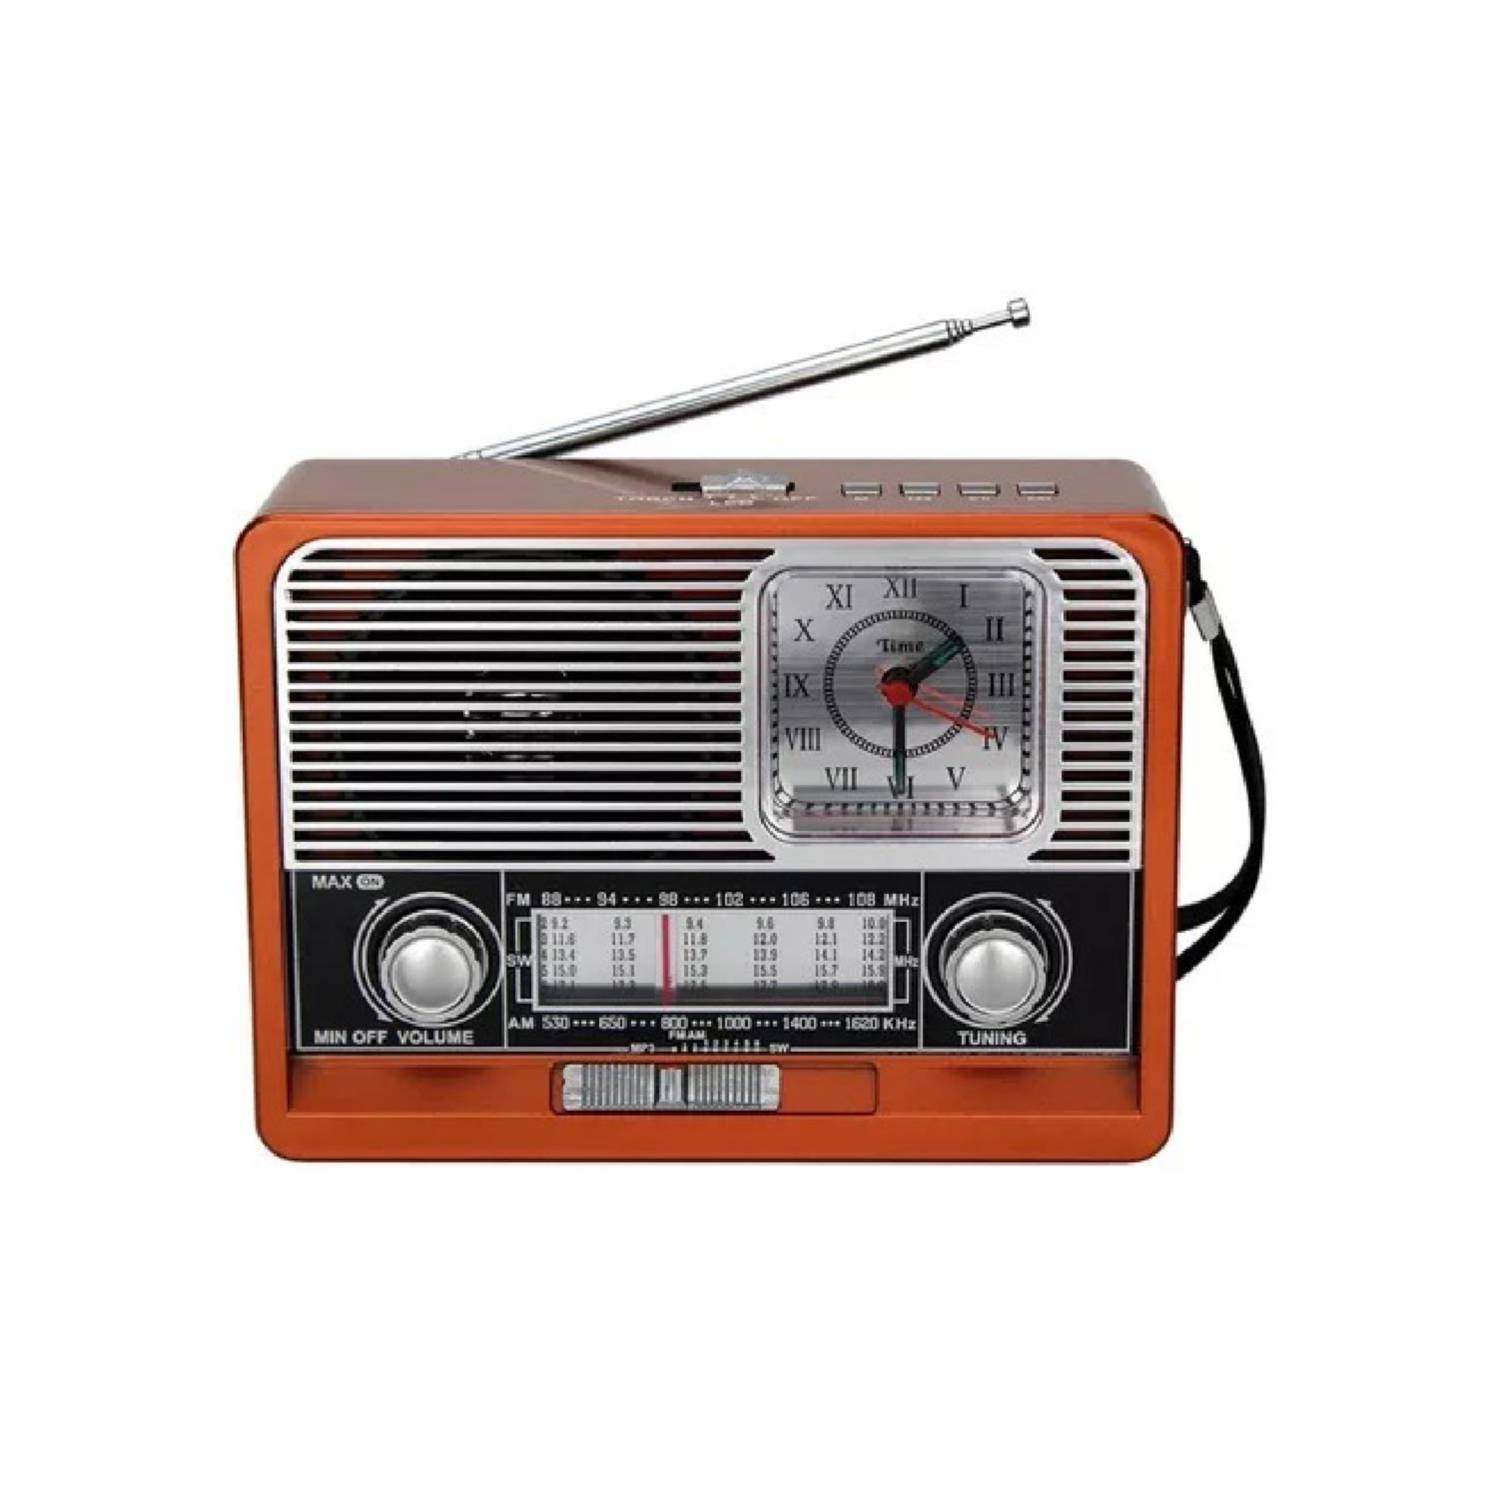 Ripley - RADIO PORTATIL AM FM RETRO VINTAGE PARLANTE BLUETOOTH MP3